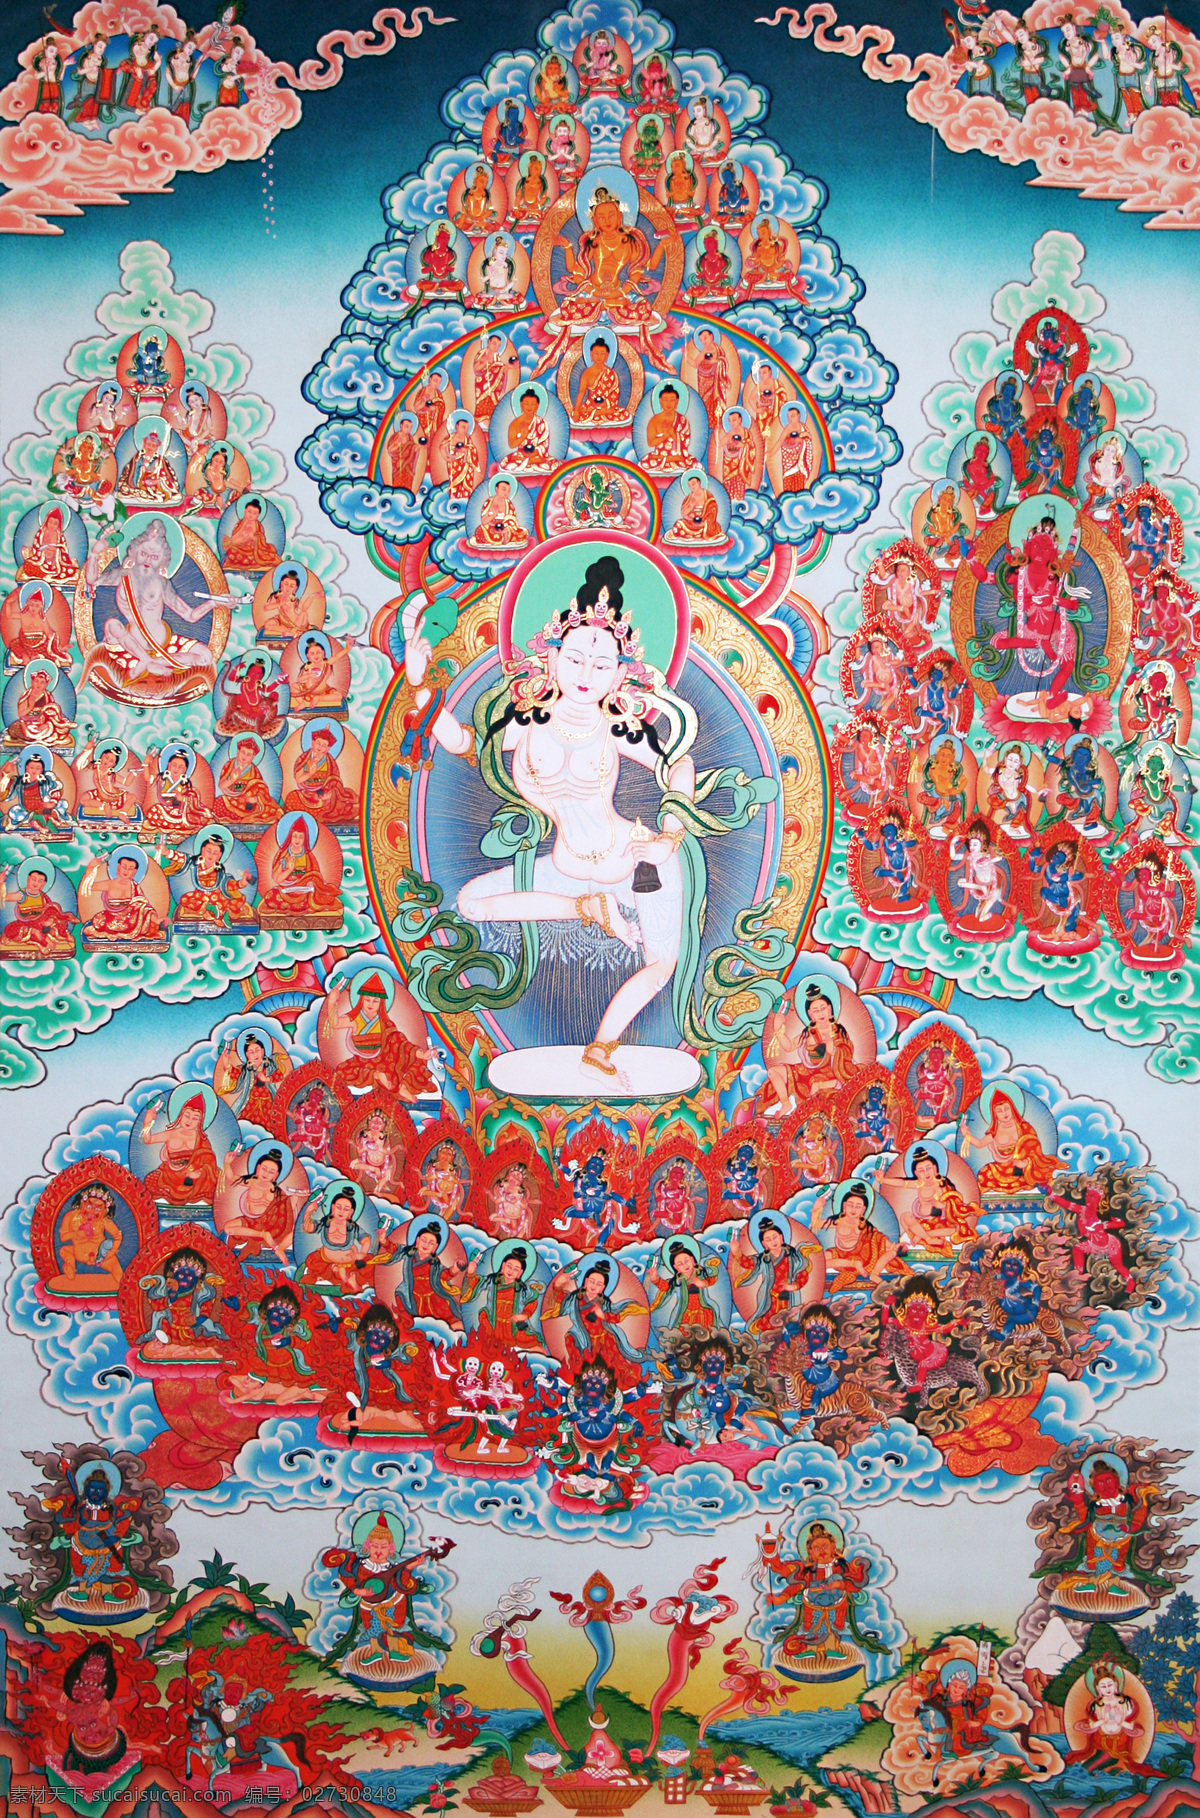 瑜伽母 唐卡 老唐卡 传承 西藏 藏传 佛教 密宗 法器 佛 菩萨 成就 成就者 大德 喇嘛 活佛 宗教信仰 文化艺术